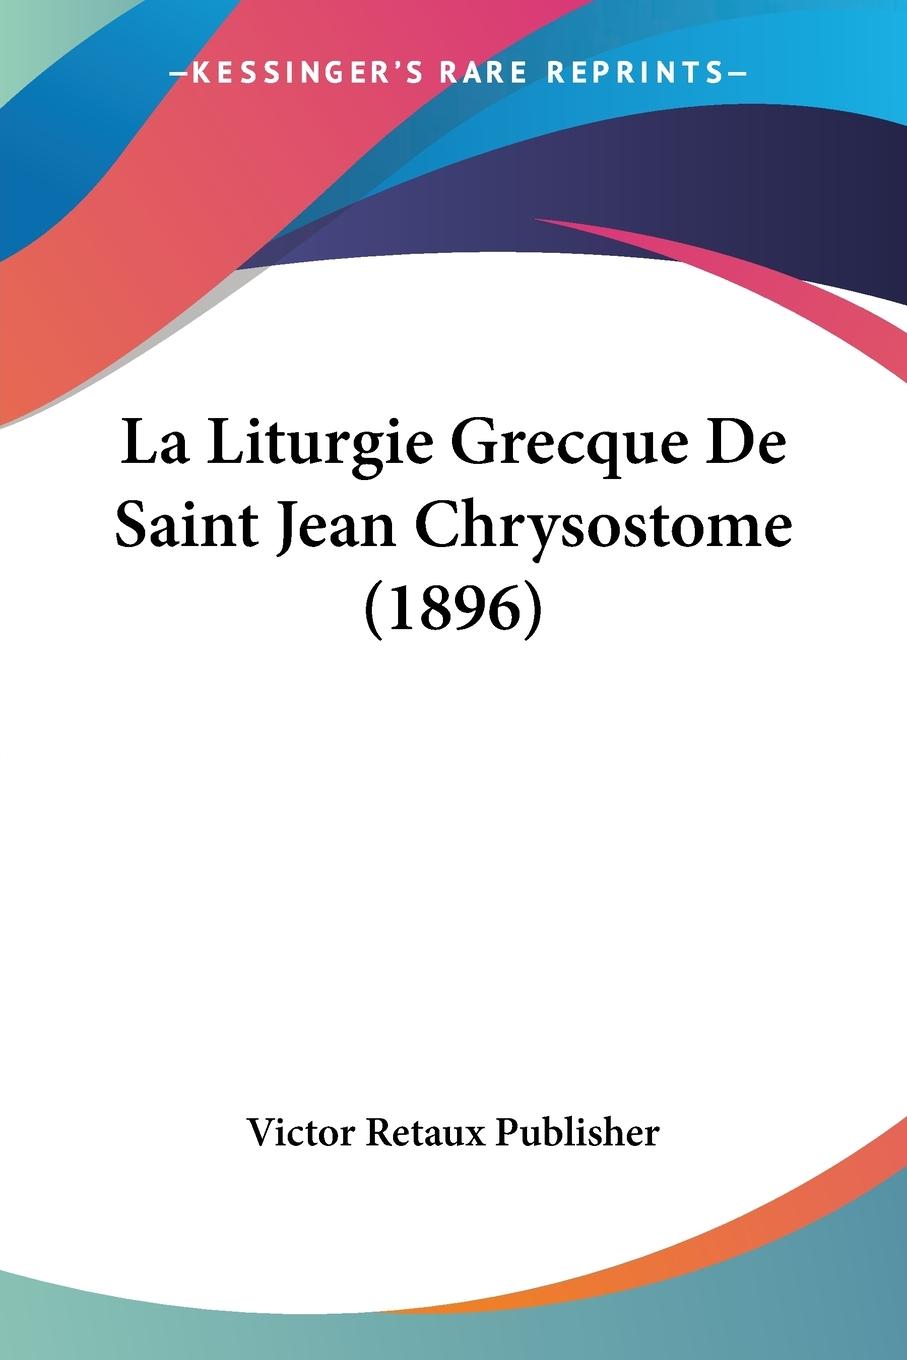 La Liturgie Grecque De Saint Jean Chrysostome (1896) - Victor Retaux Publisher